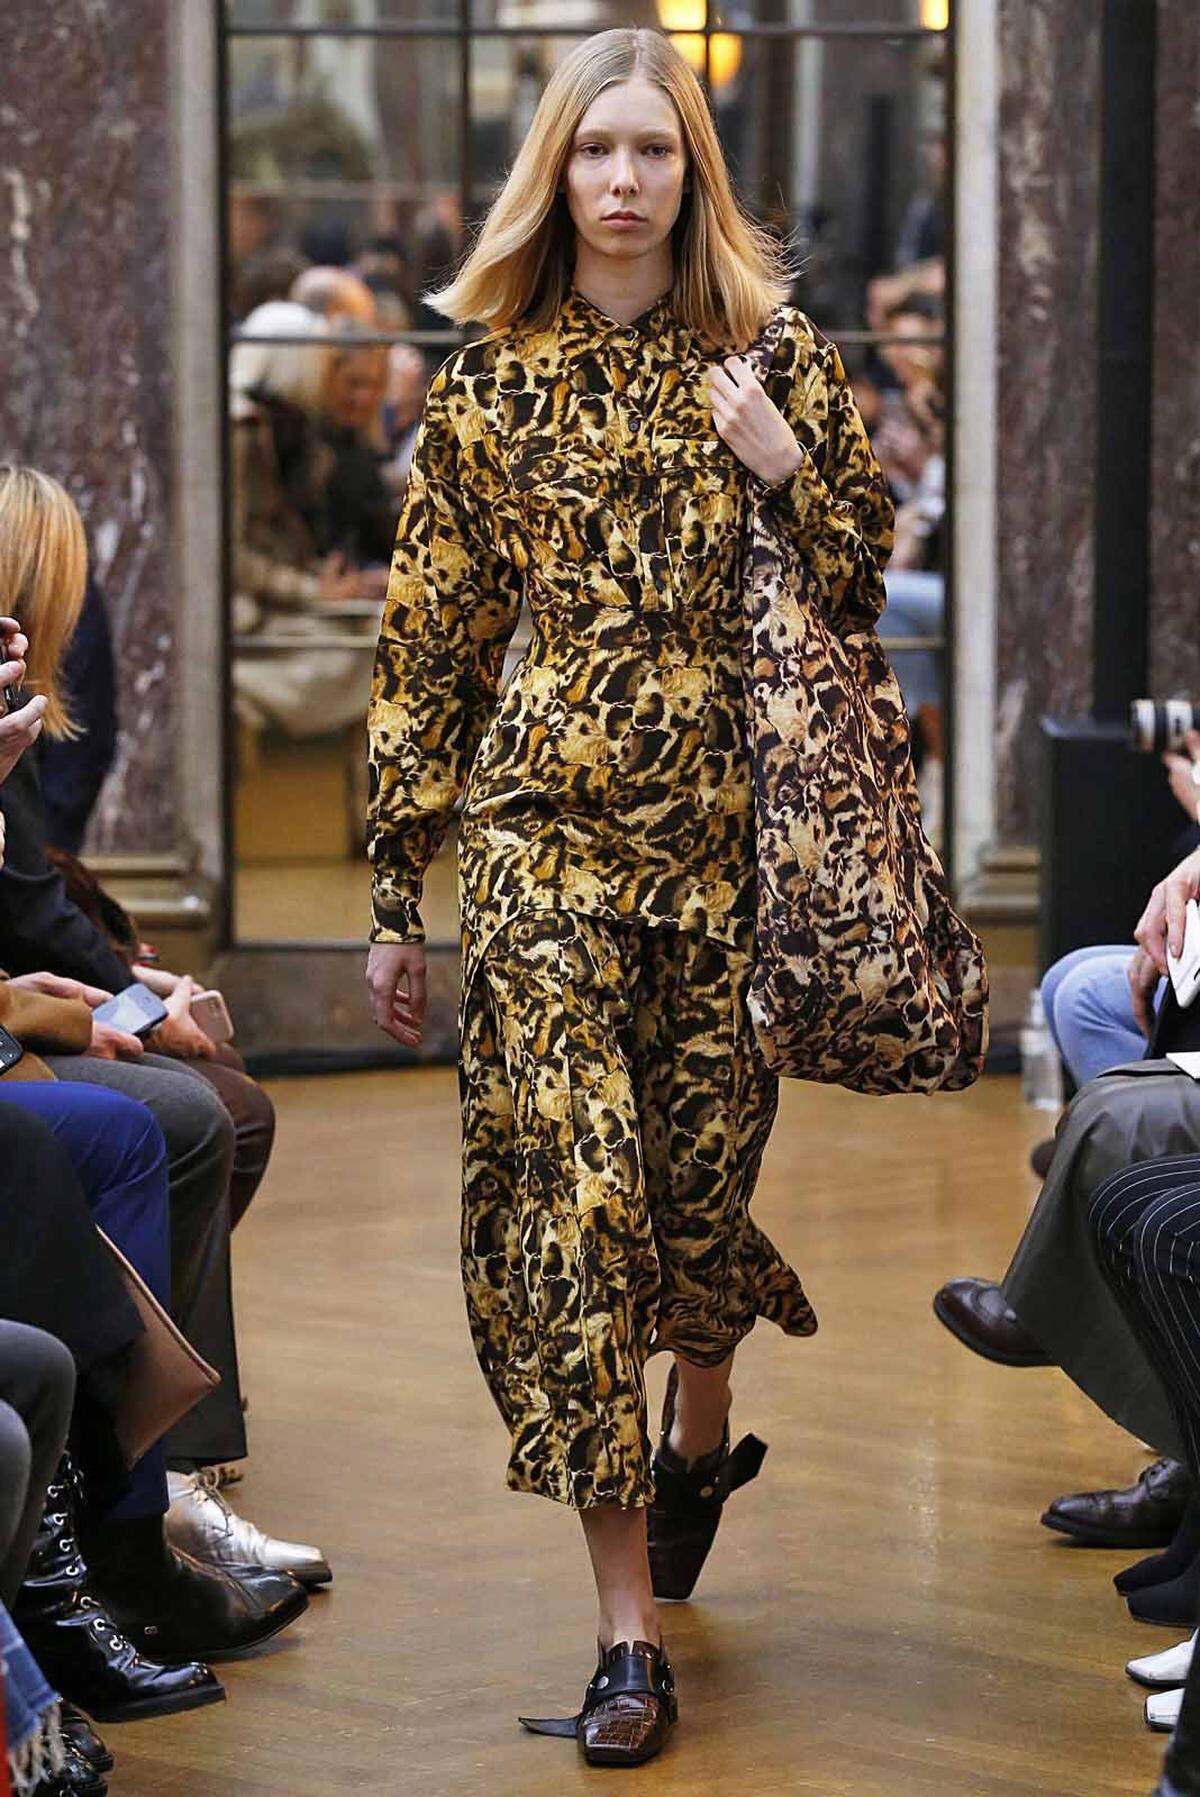 Ein Verlust für New York, immerhin gehörte die Catwalk-Show von Beckham zu den beliebtesten und gefragtesten der Modewoche. Die 43-Jährige ließ sich diesmal übrigens passenderweise von "Girl Power" inspirieren.